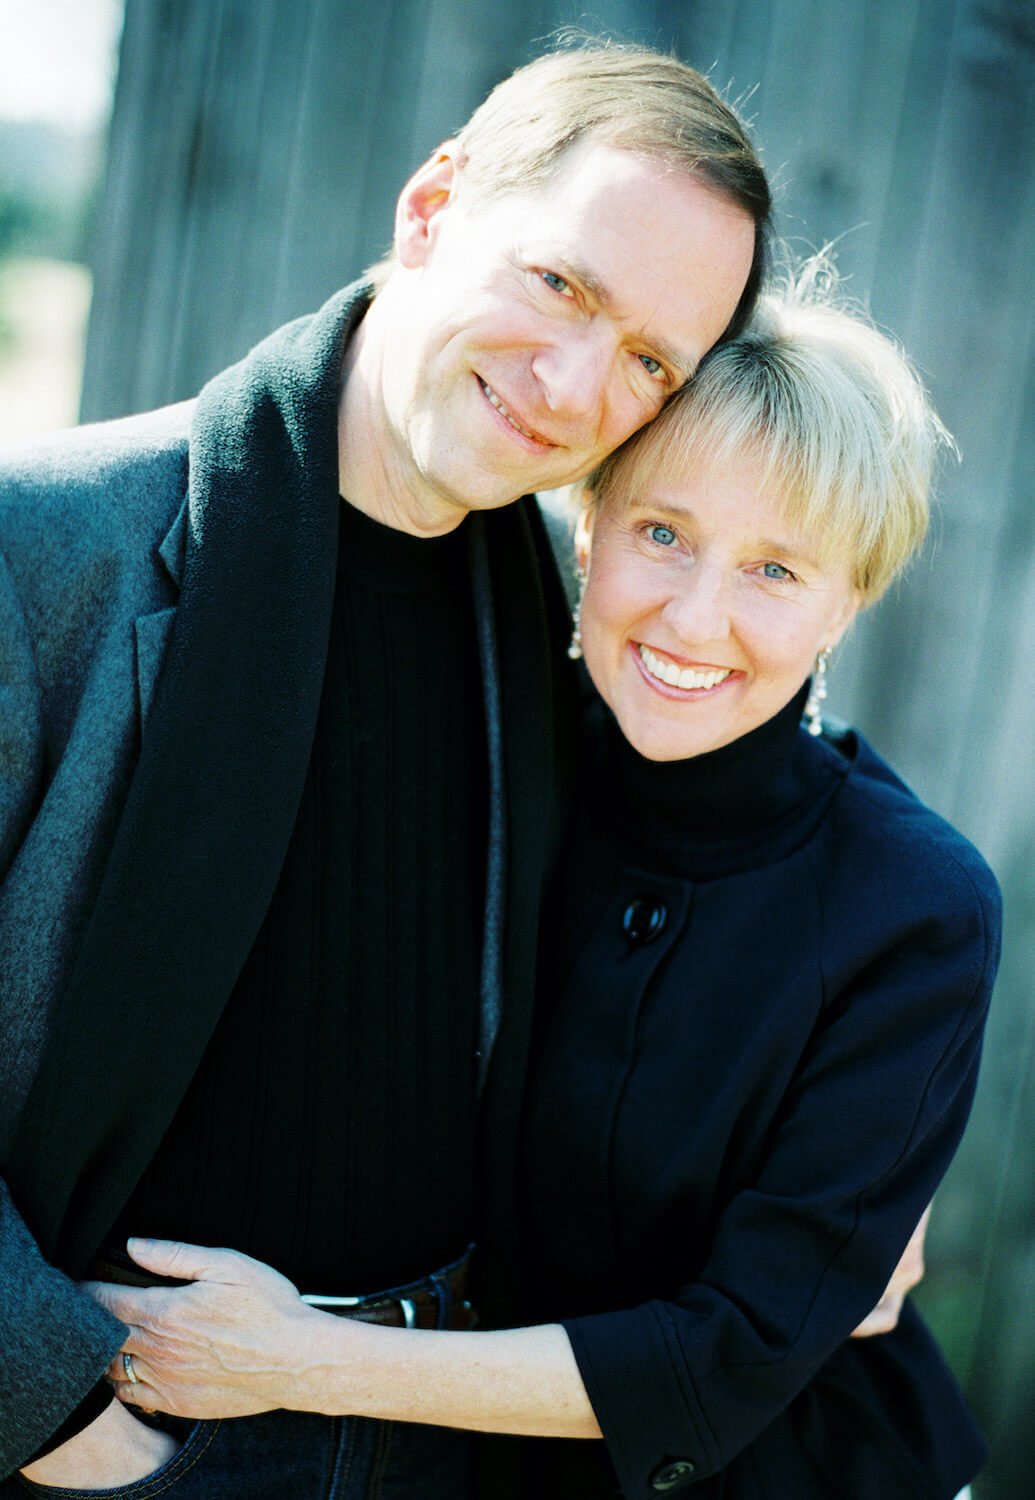 John David Mann and his wife, Ana Gabriel Mann